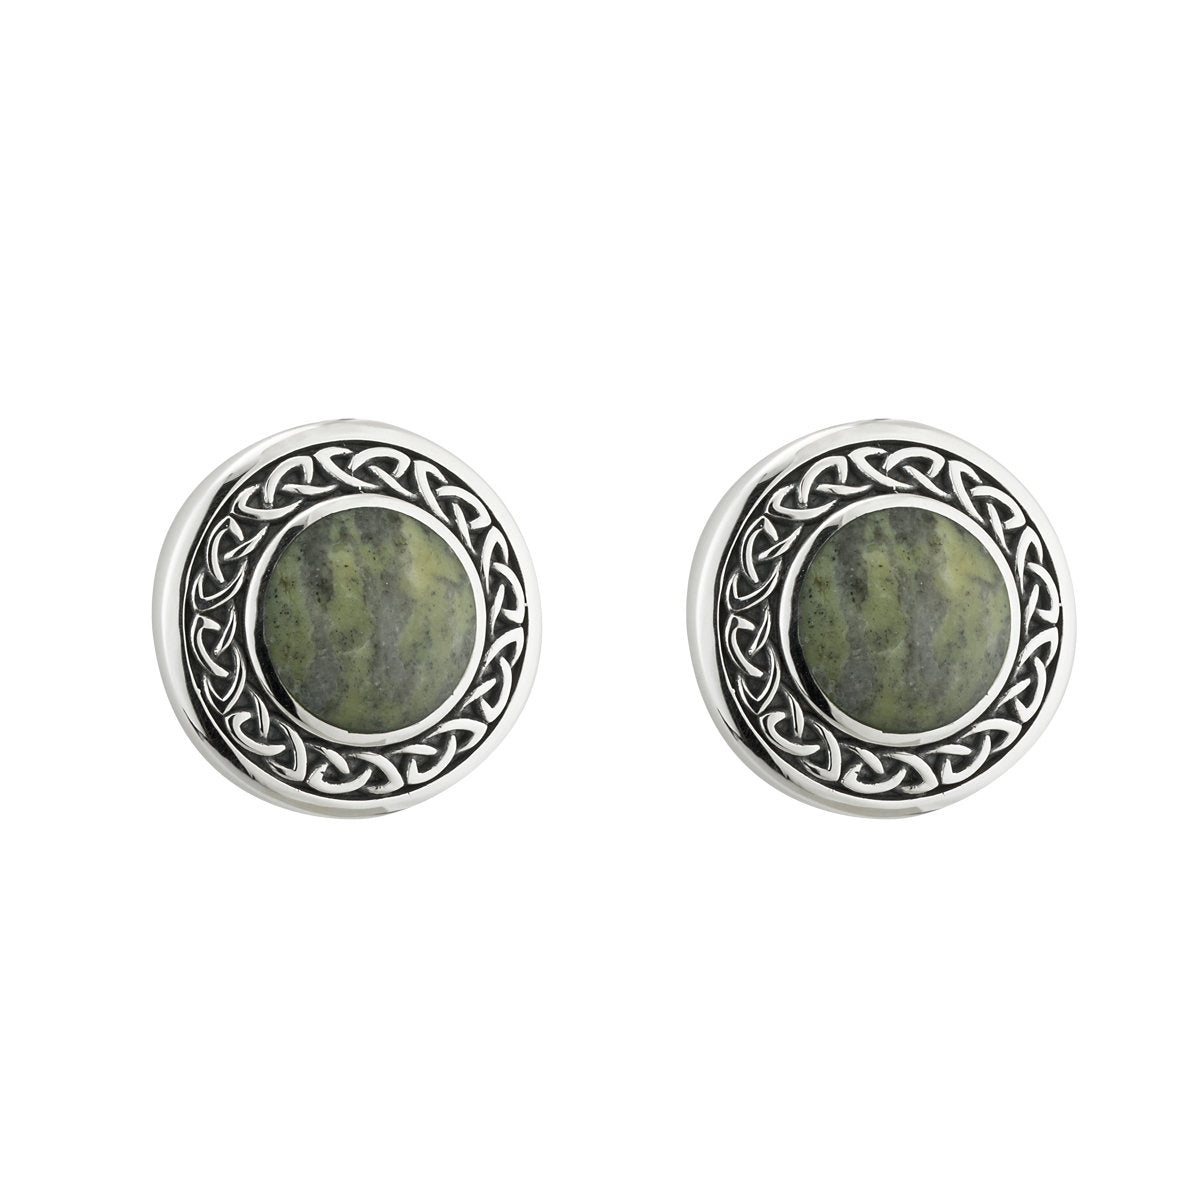 S33773 Connemara Marble & Celtic Knot Post Earrings